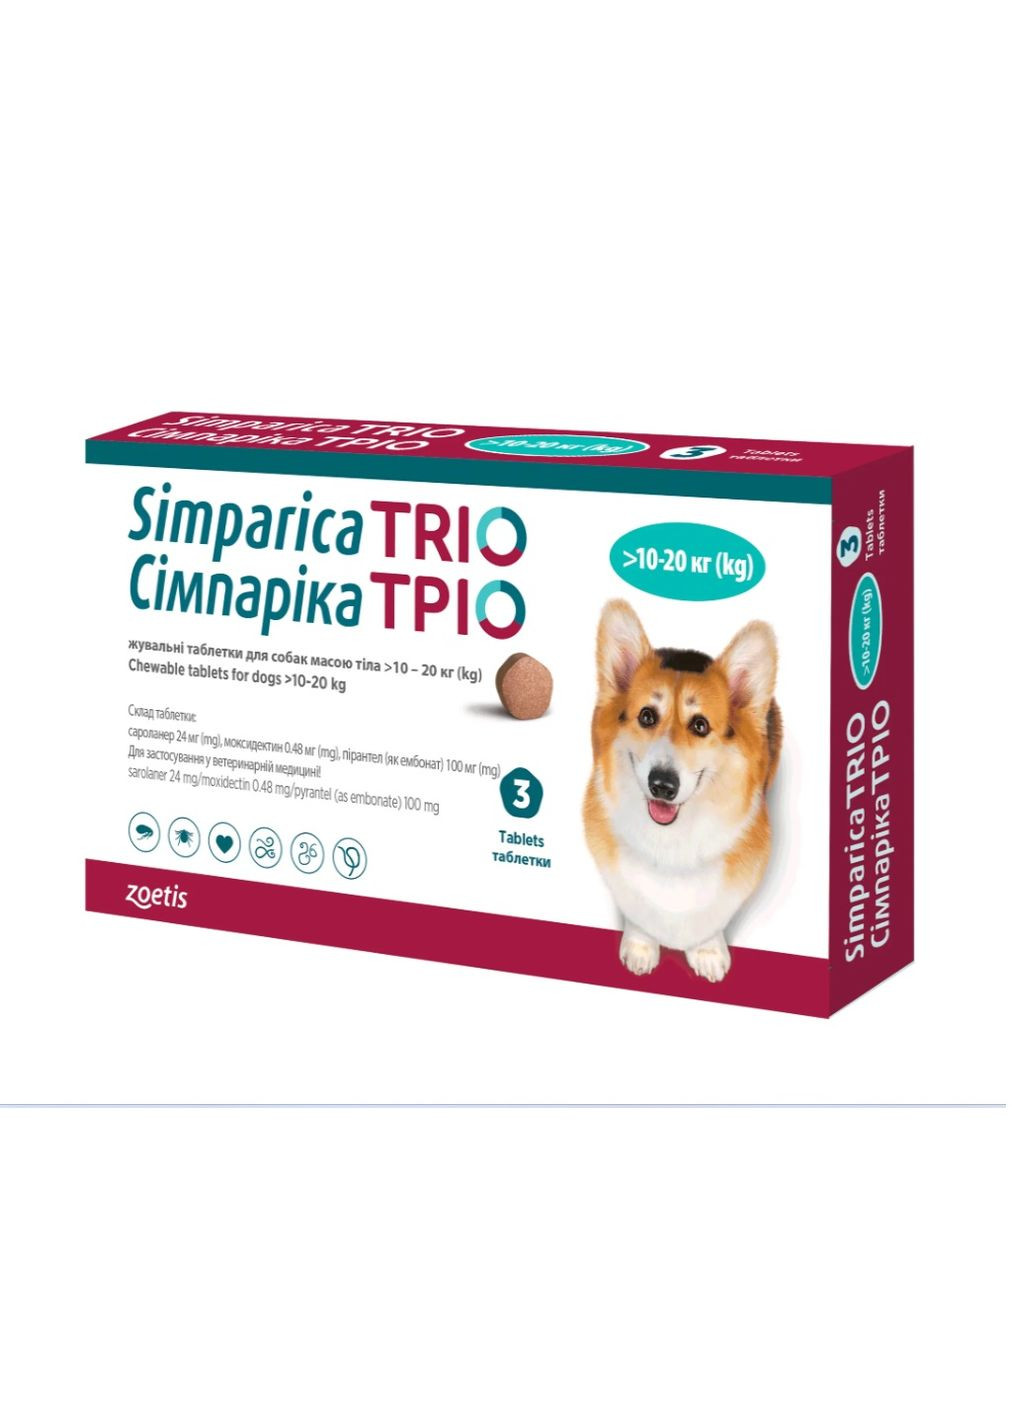 Противоразитарные жевательные таблетки Симпарика ТРИО для собак весом 10 - 20 кг от блох, клещей и гельминтов (1 таблетка) Simparica (282842920)